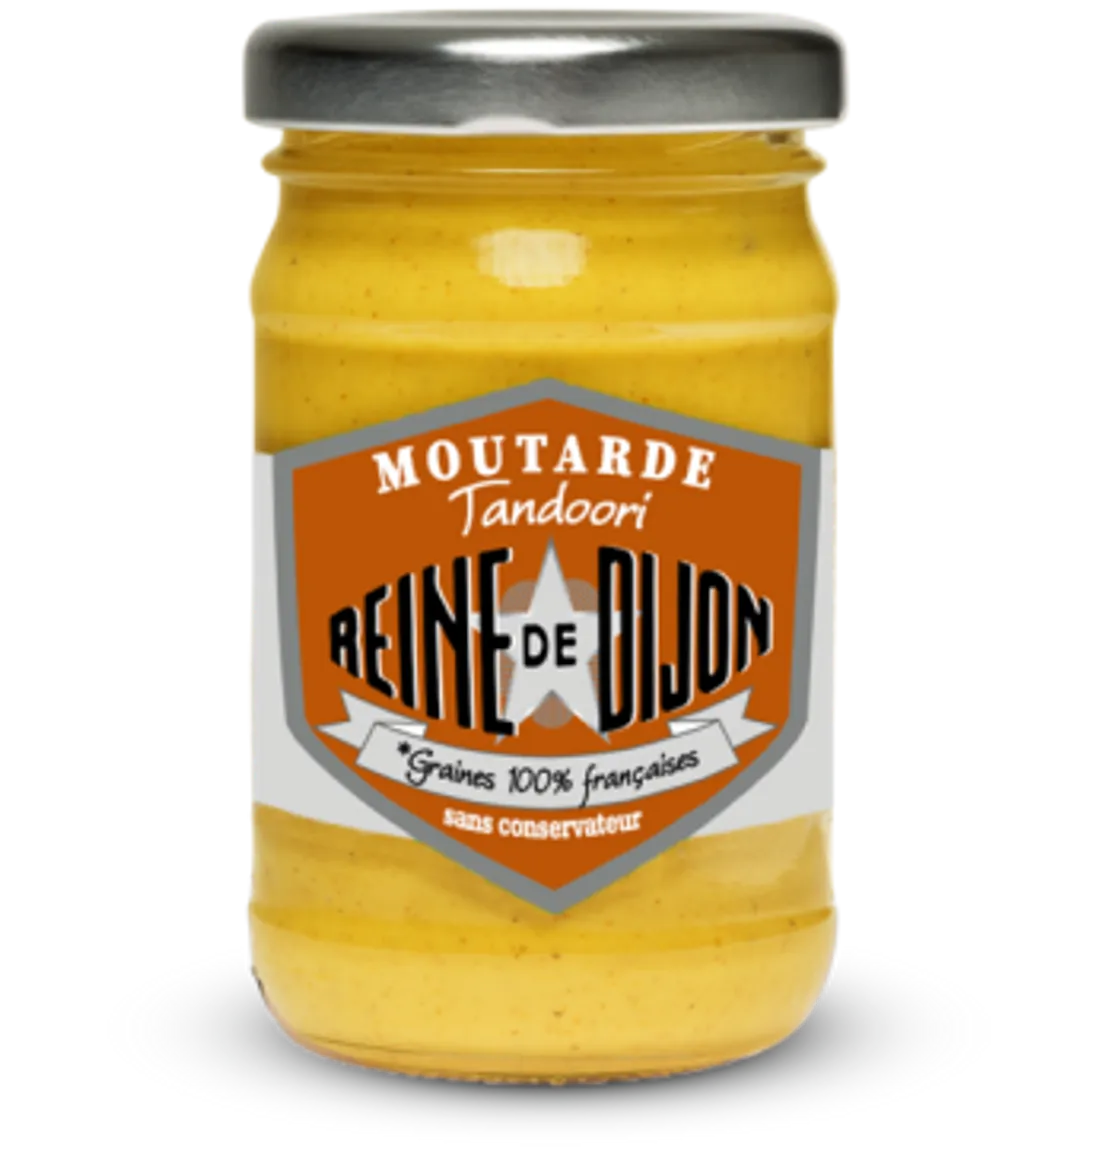 « Reine de Dijon » lance une nouvelle gamme de moutardes : "la Tandoori" 